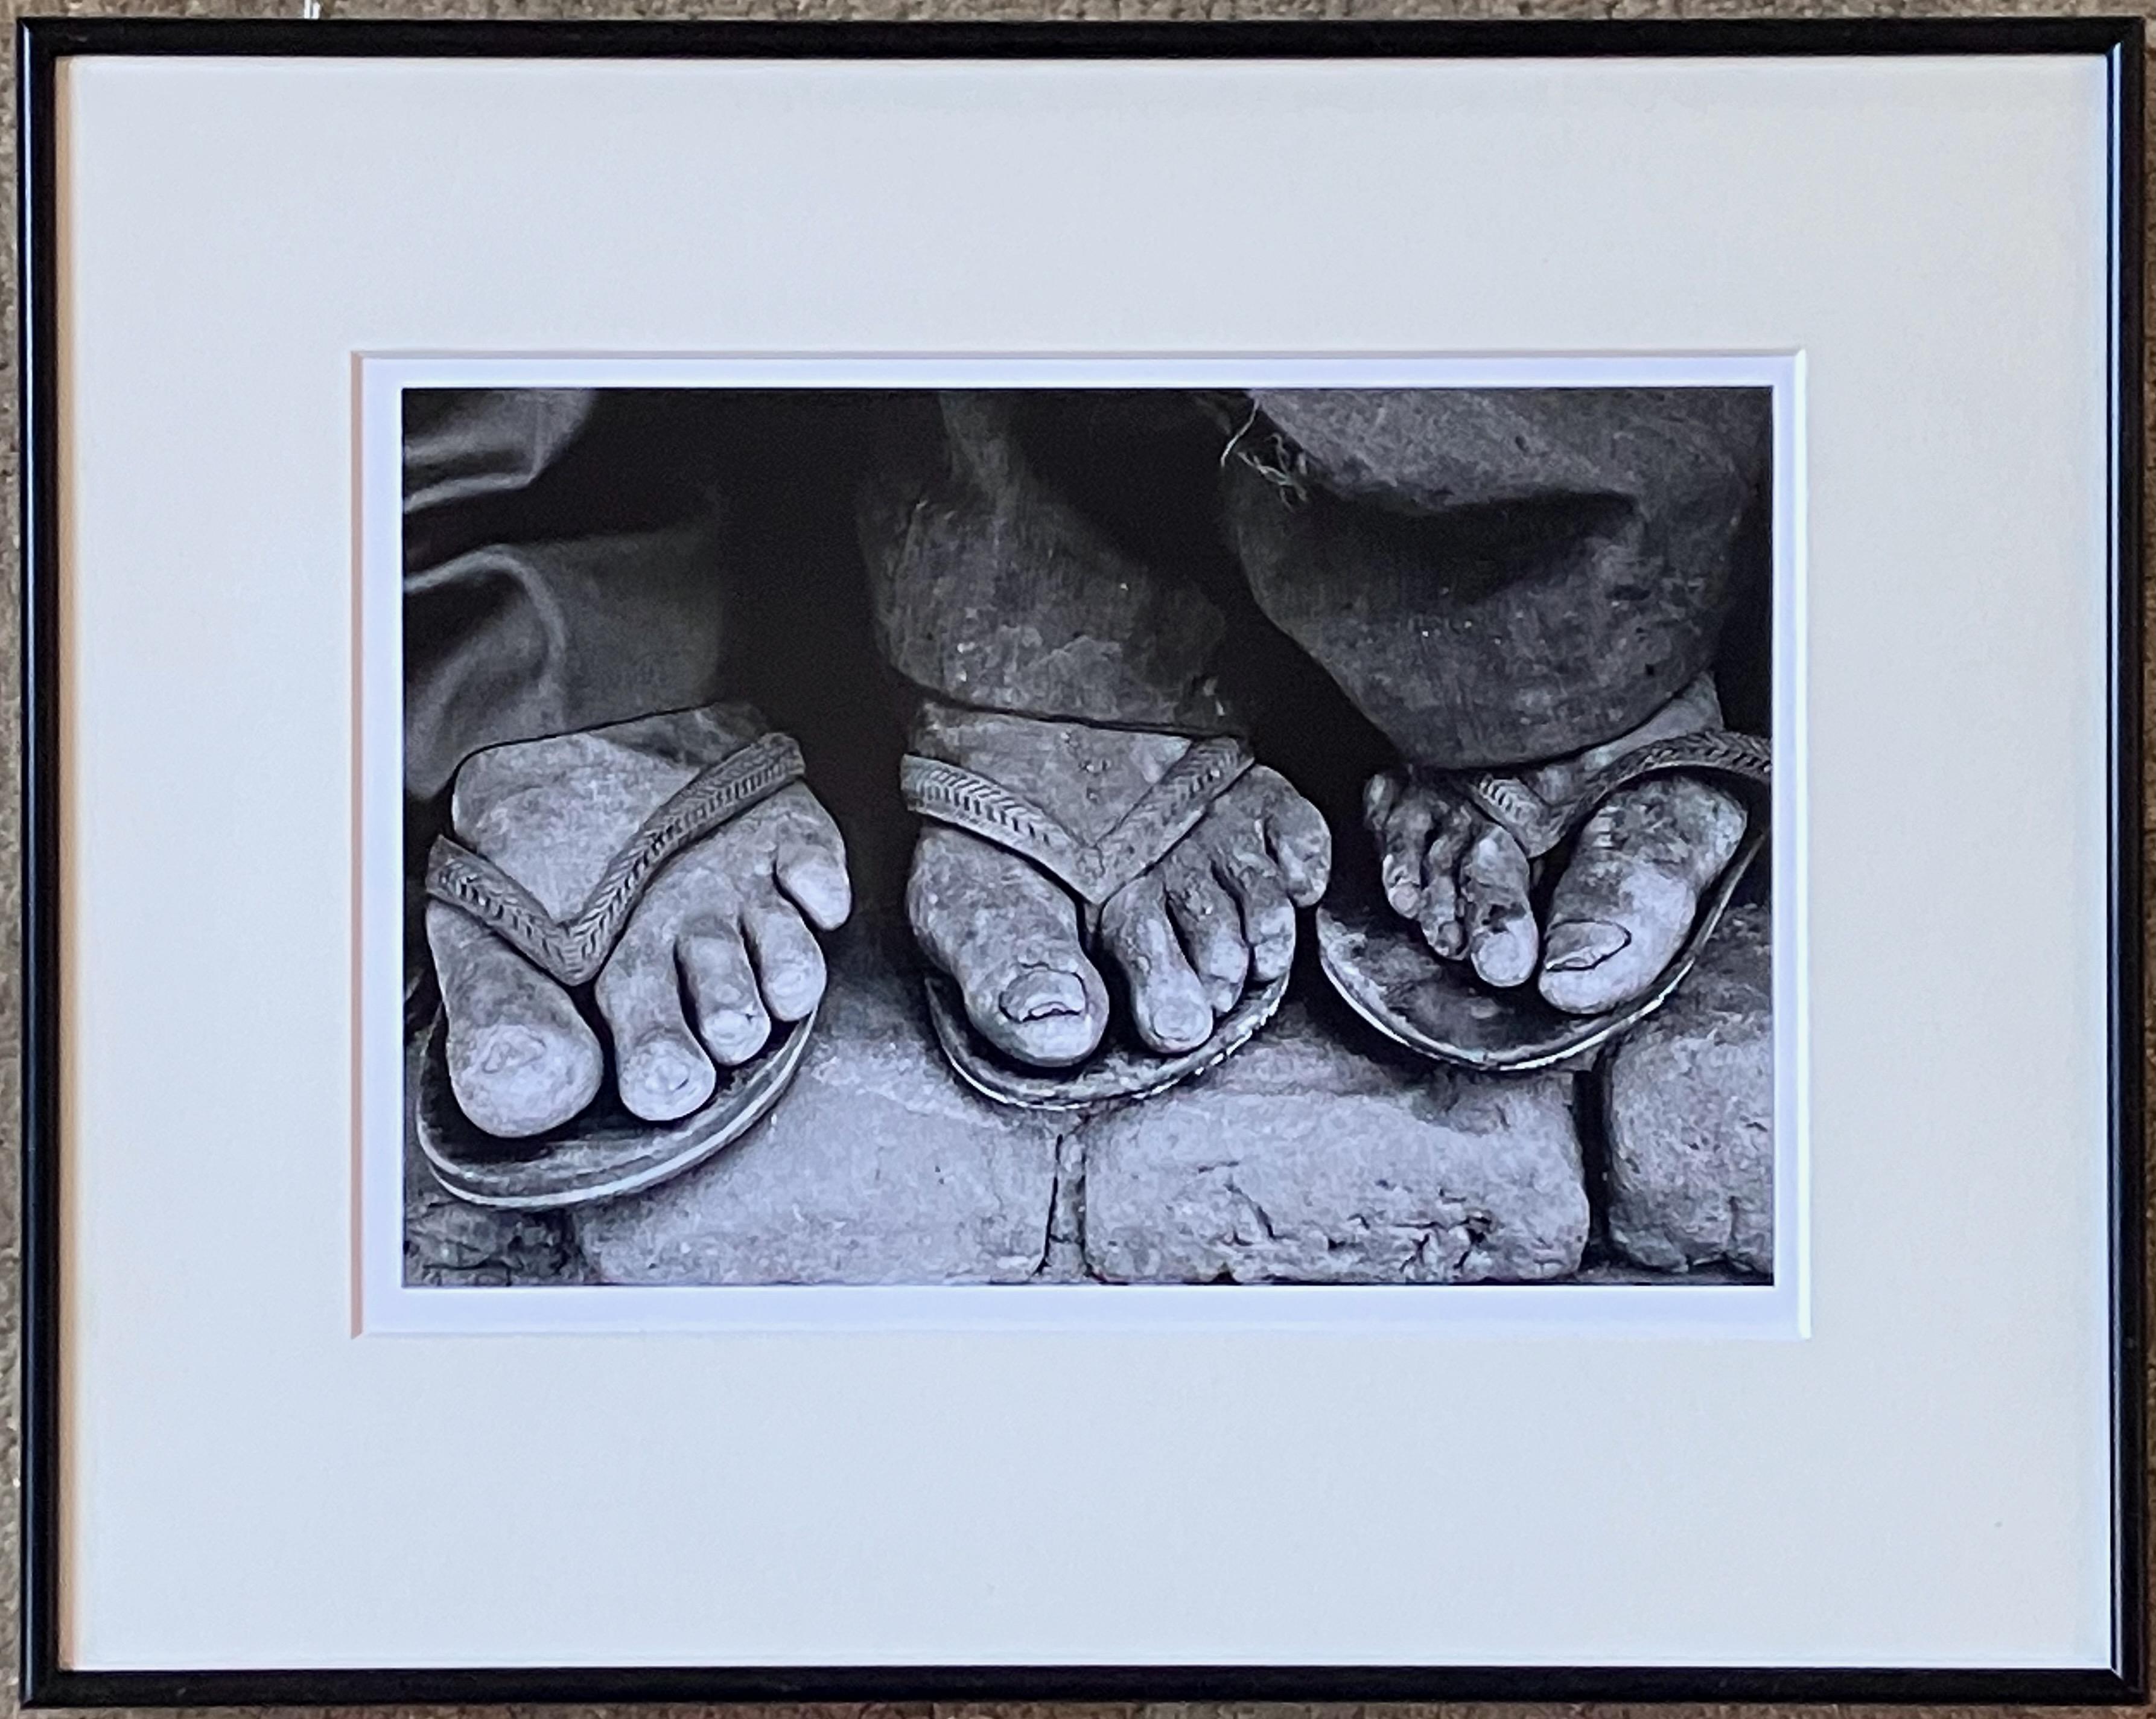 Feet, Brazil - Realist Photograph by Sebastião Salgado